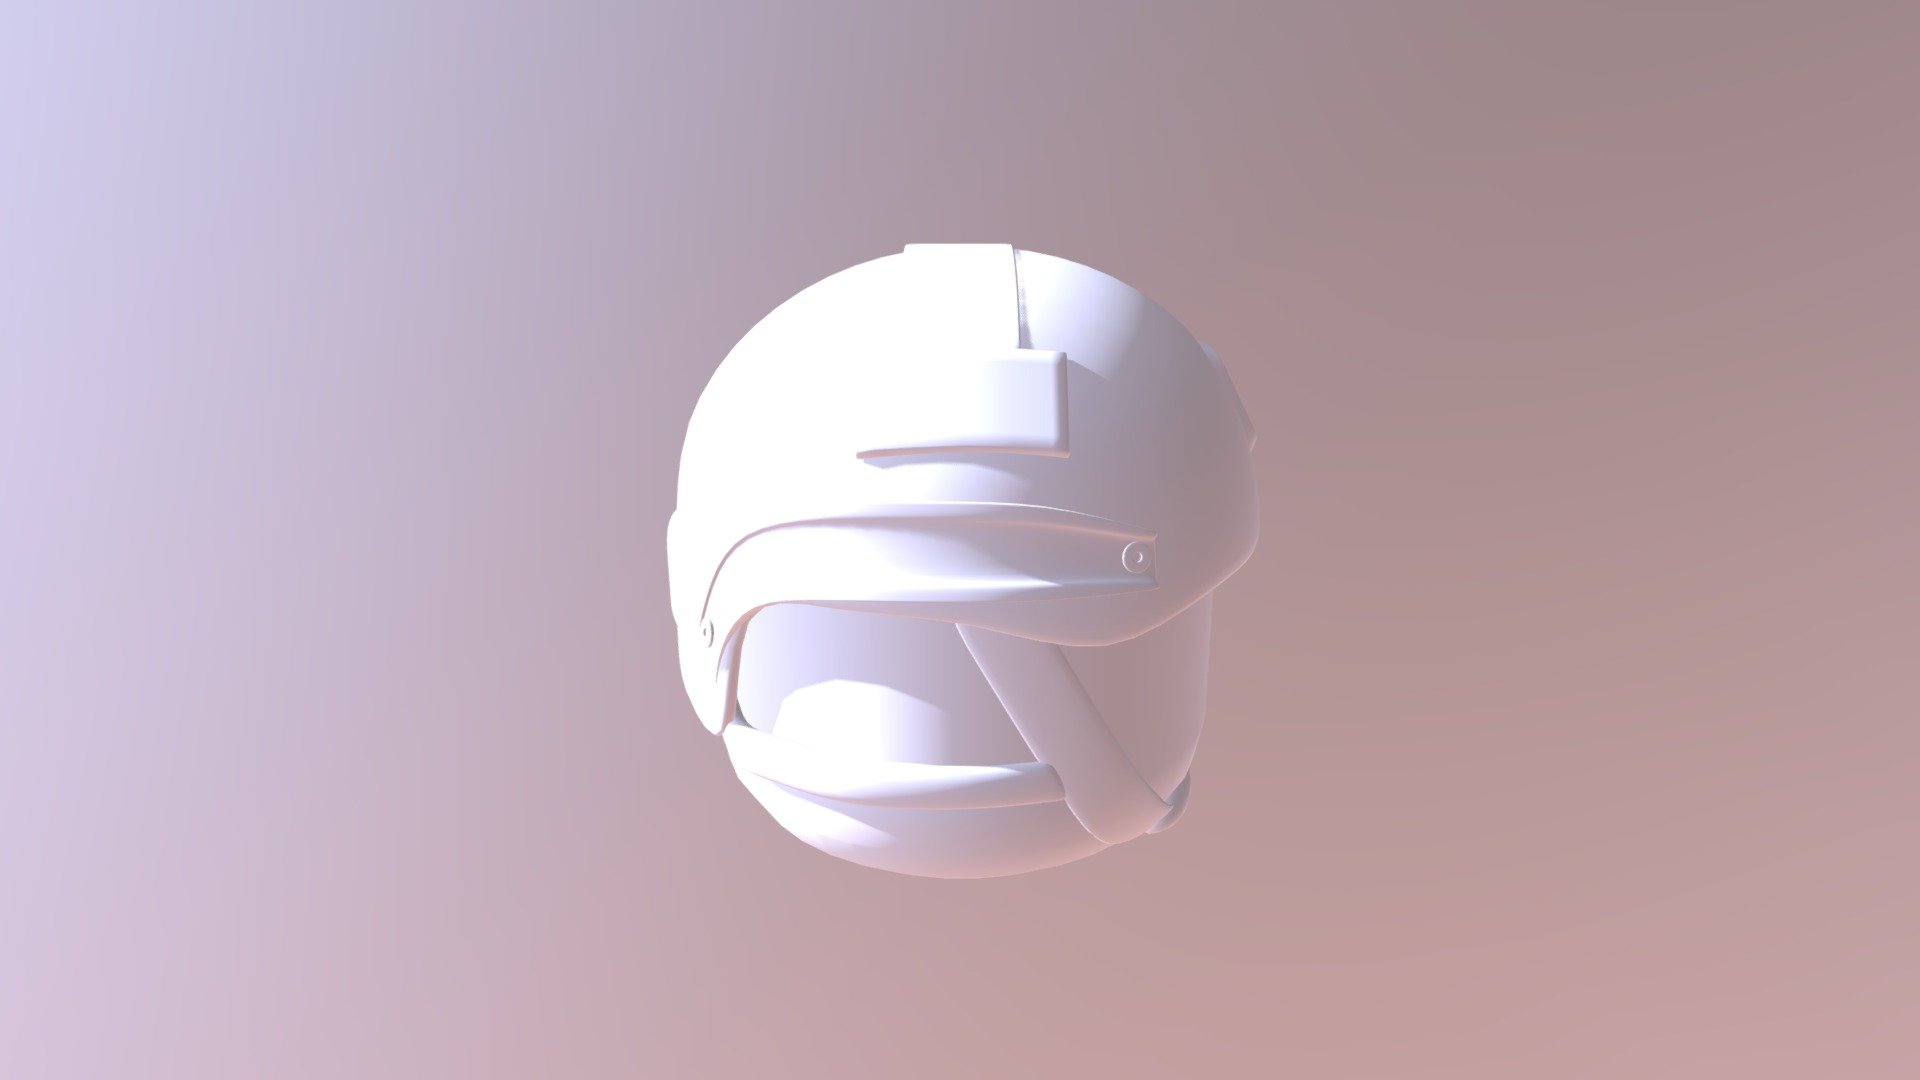 Roblox Fast Helmet 3d Model By Militia 405 Militia 405 7d867e7 Sketchfab - fast helmet roblox id